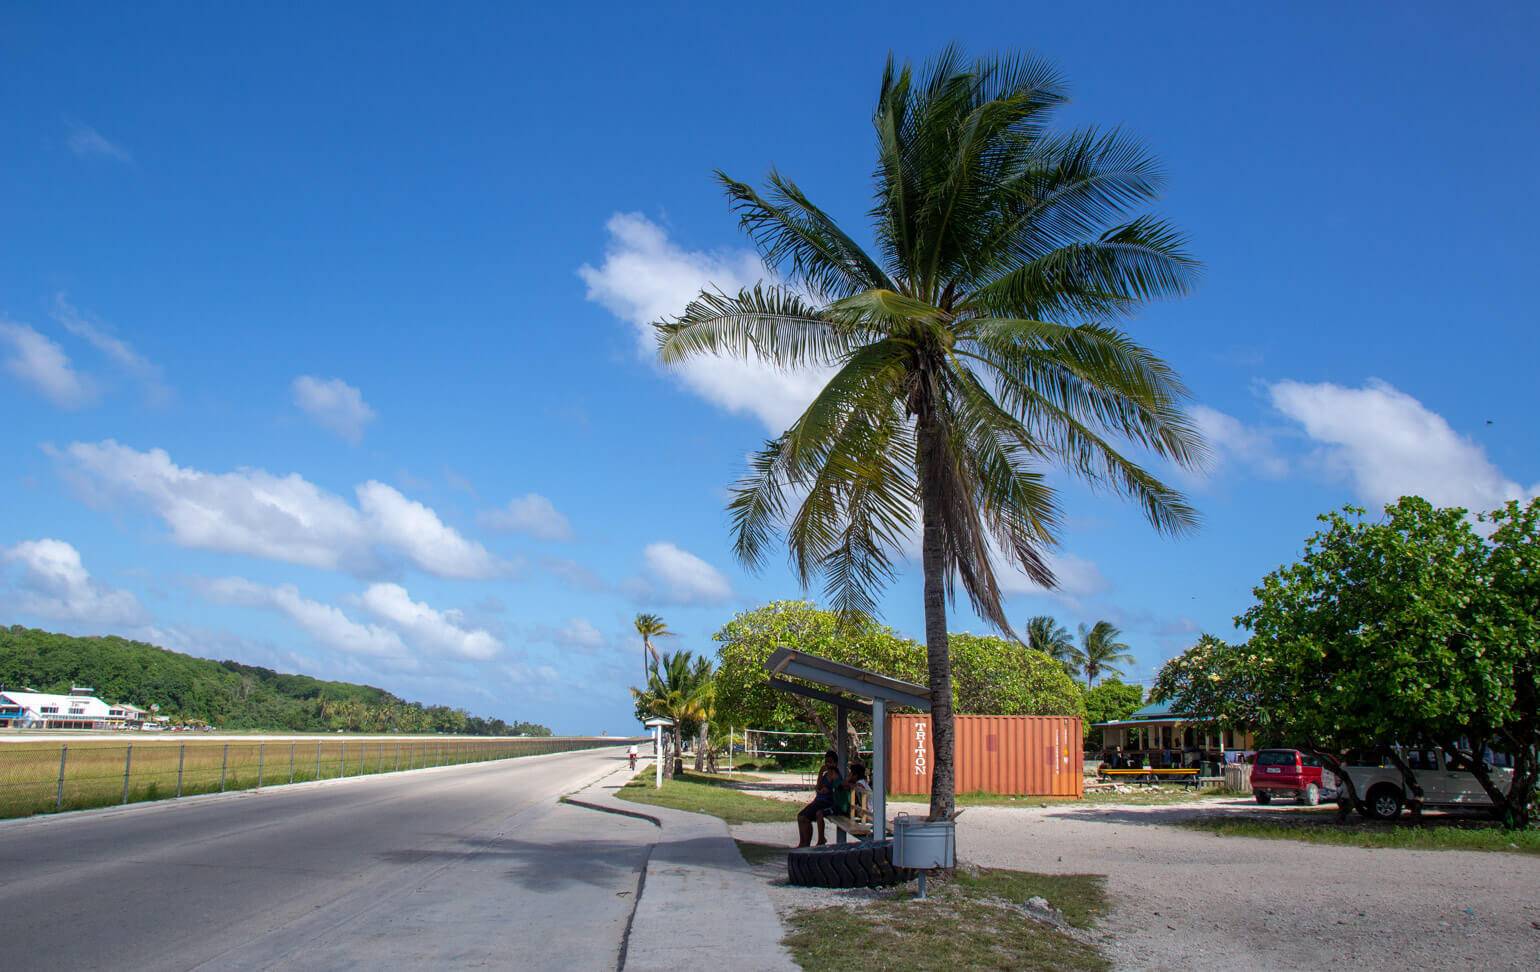 Bus stop and street, Nauru